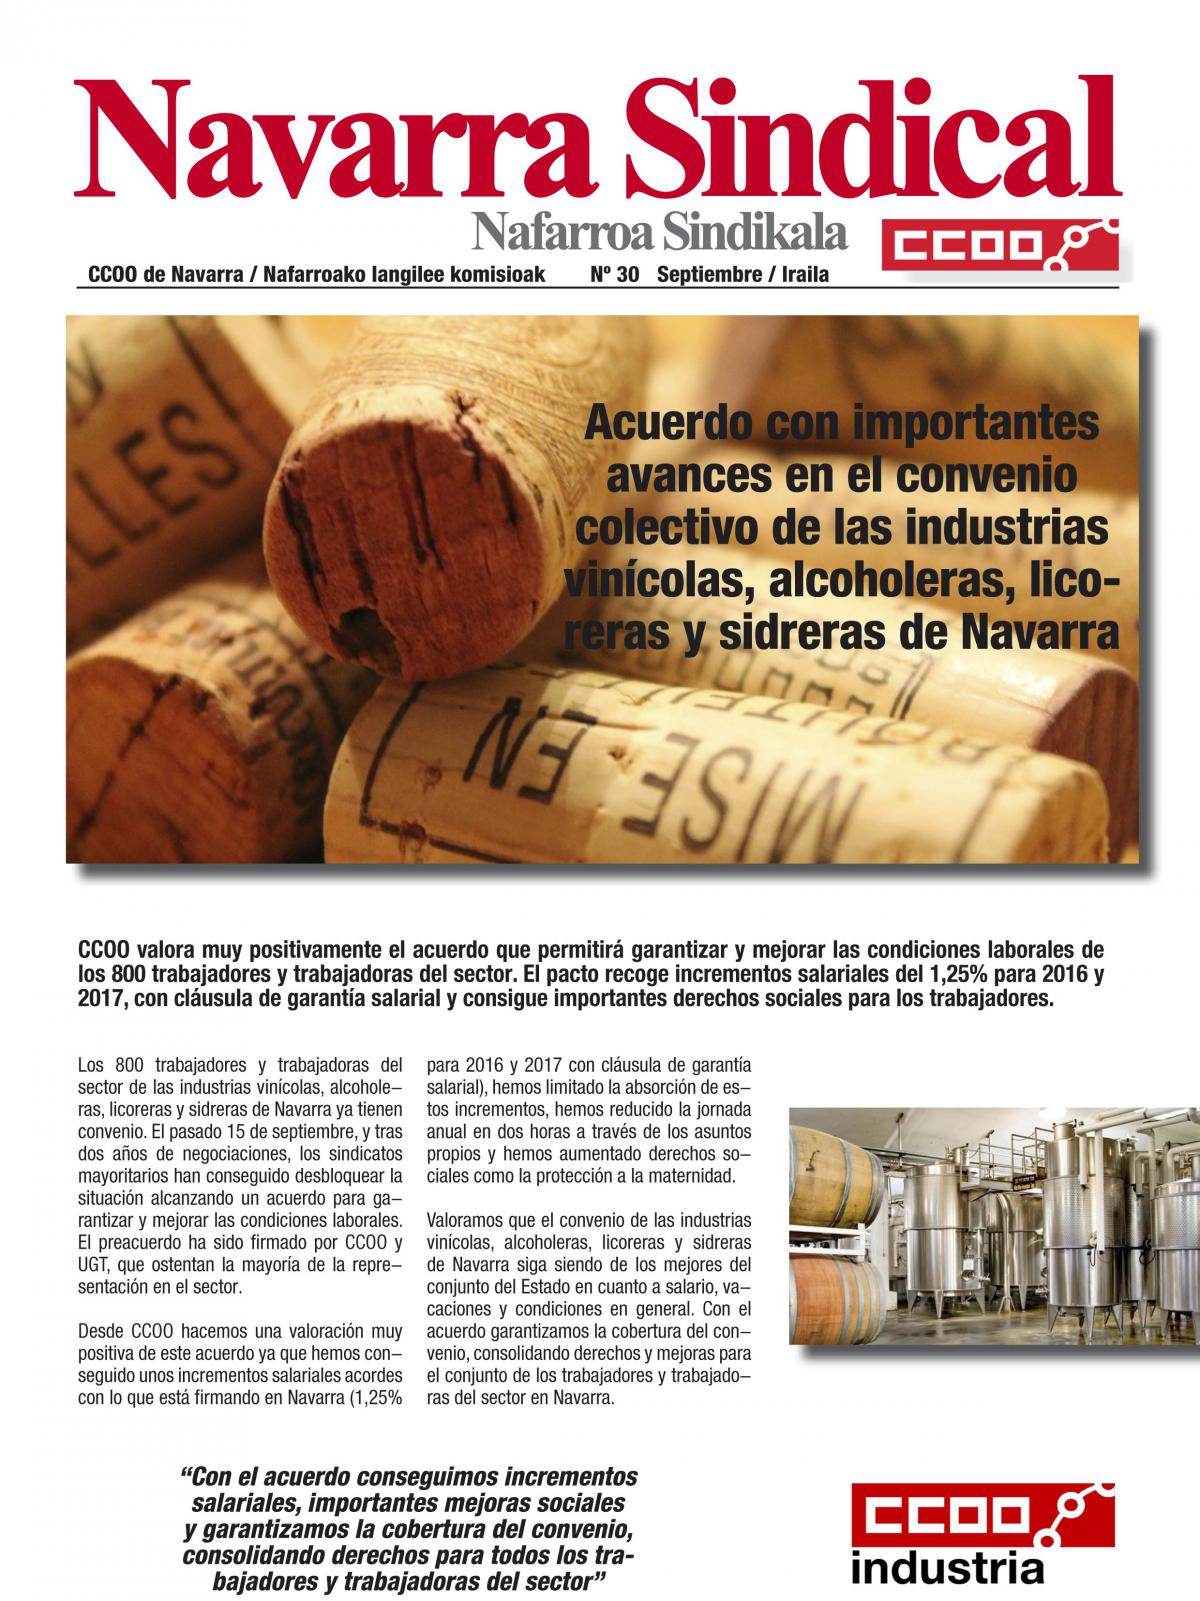 Acuerdo con importantes avances en el convenio colectivo de las industrias vincolas, alcoholeras, licoreras y sidreras de Navarra